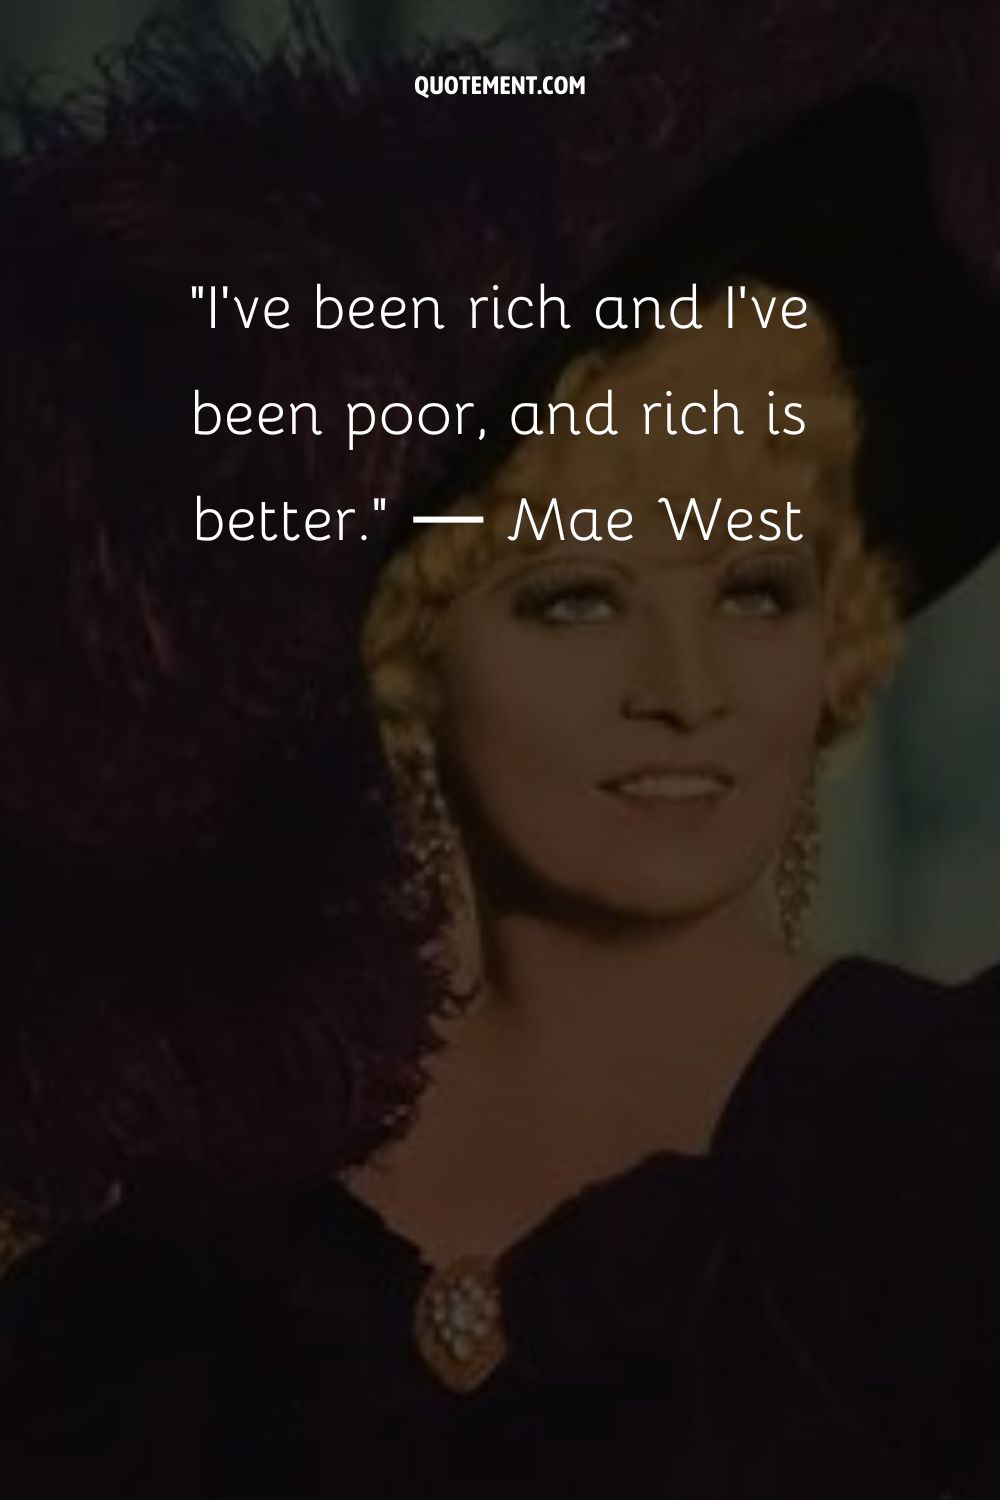 He sido rico y he sido pobre, y rico es mejor